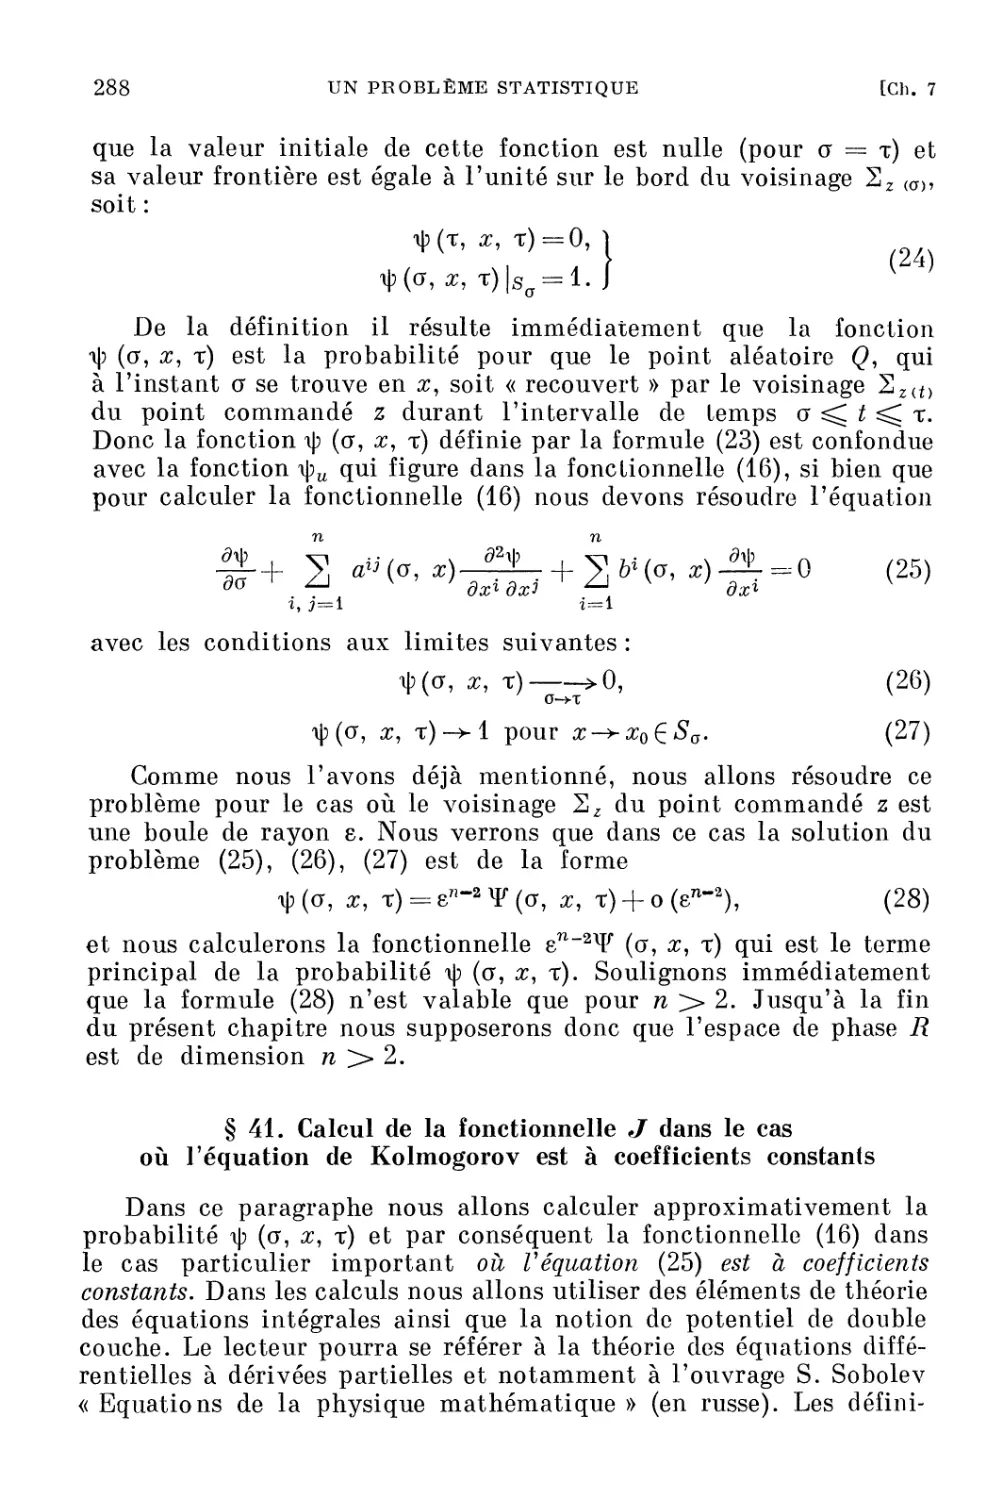 41. Calcul de la fonctionnelle J dans le cas où l'équation de Kolmogorov est à coefficients constants